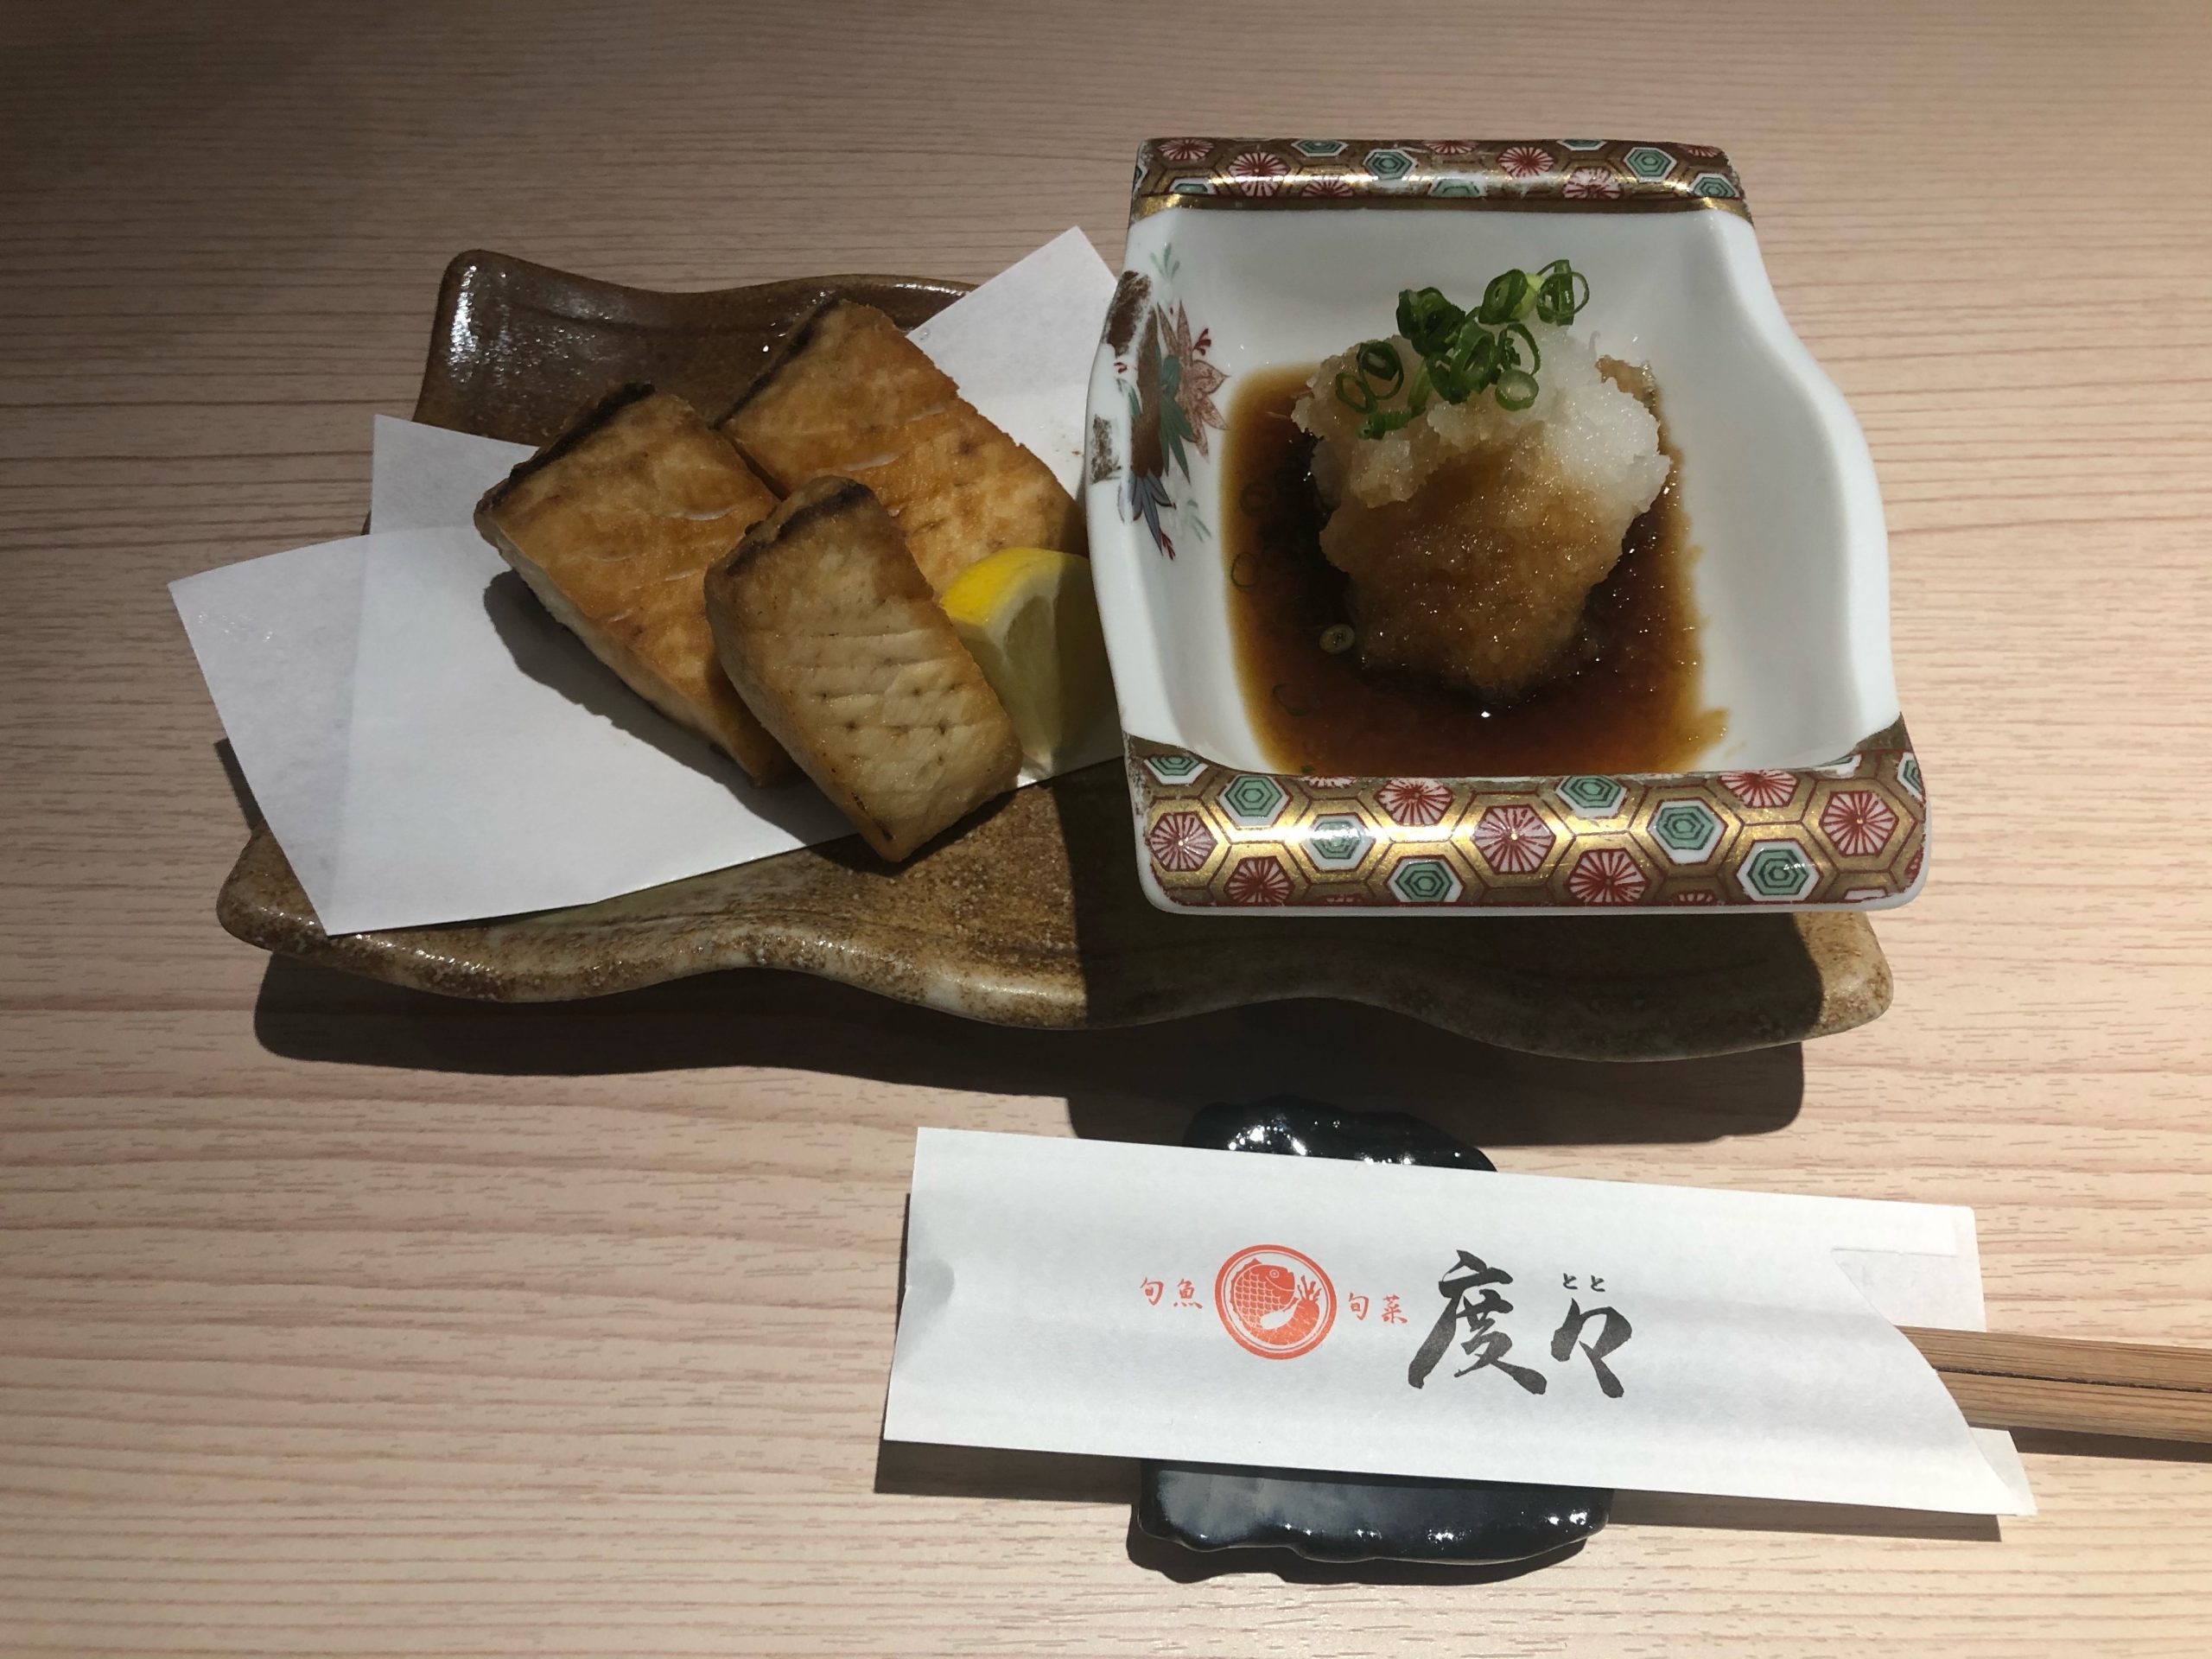 こちの唐揚げ 海の恵み 食の底力 Japan 公式レシピサイト